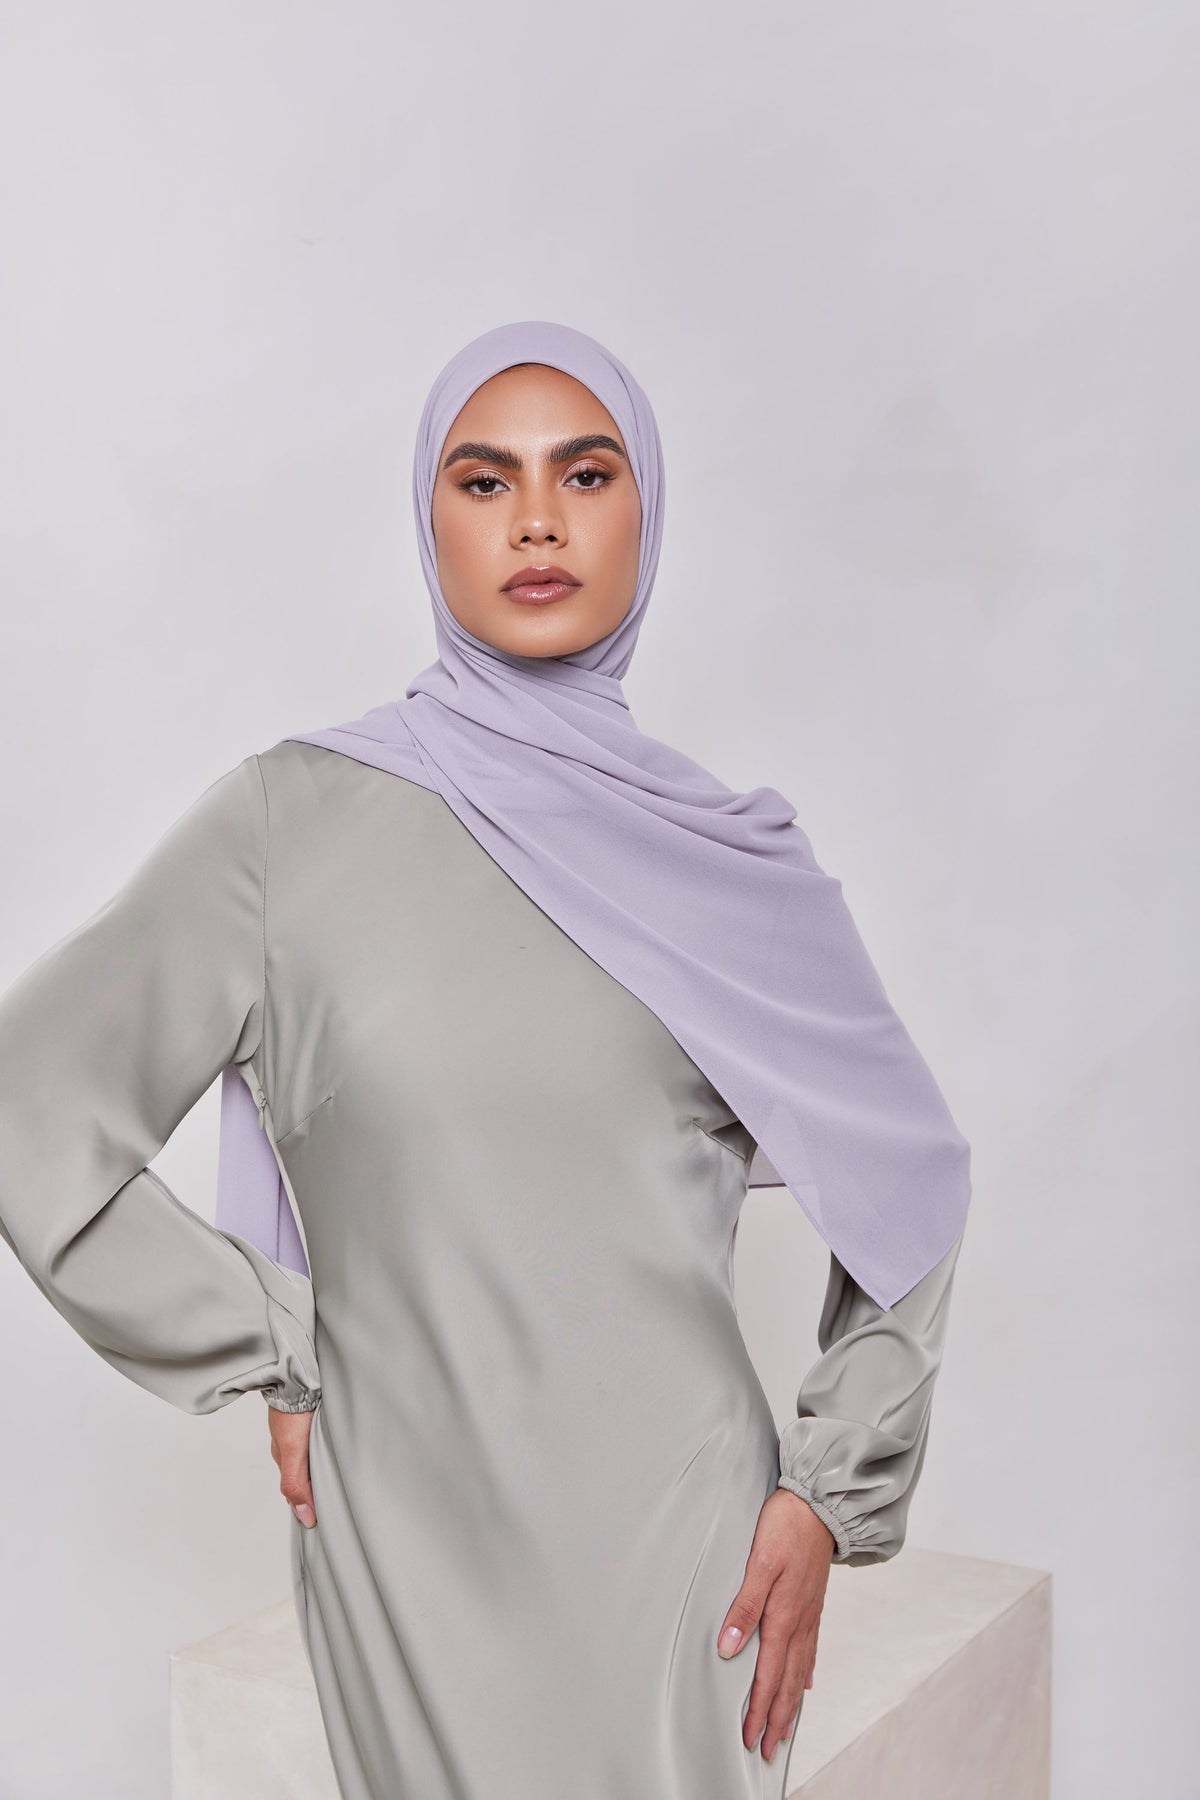 Essential Chiffon Hijab - Cool Grey Scarves & Shawls epschoolboard 